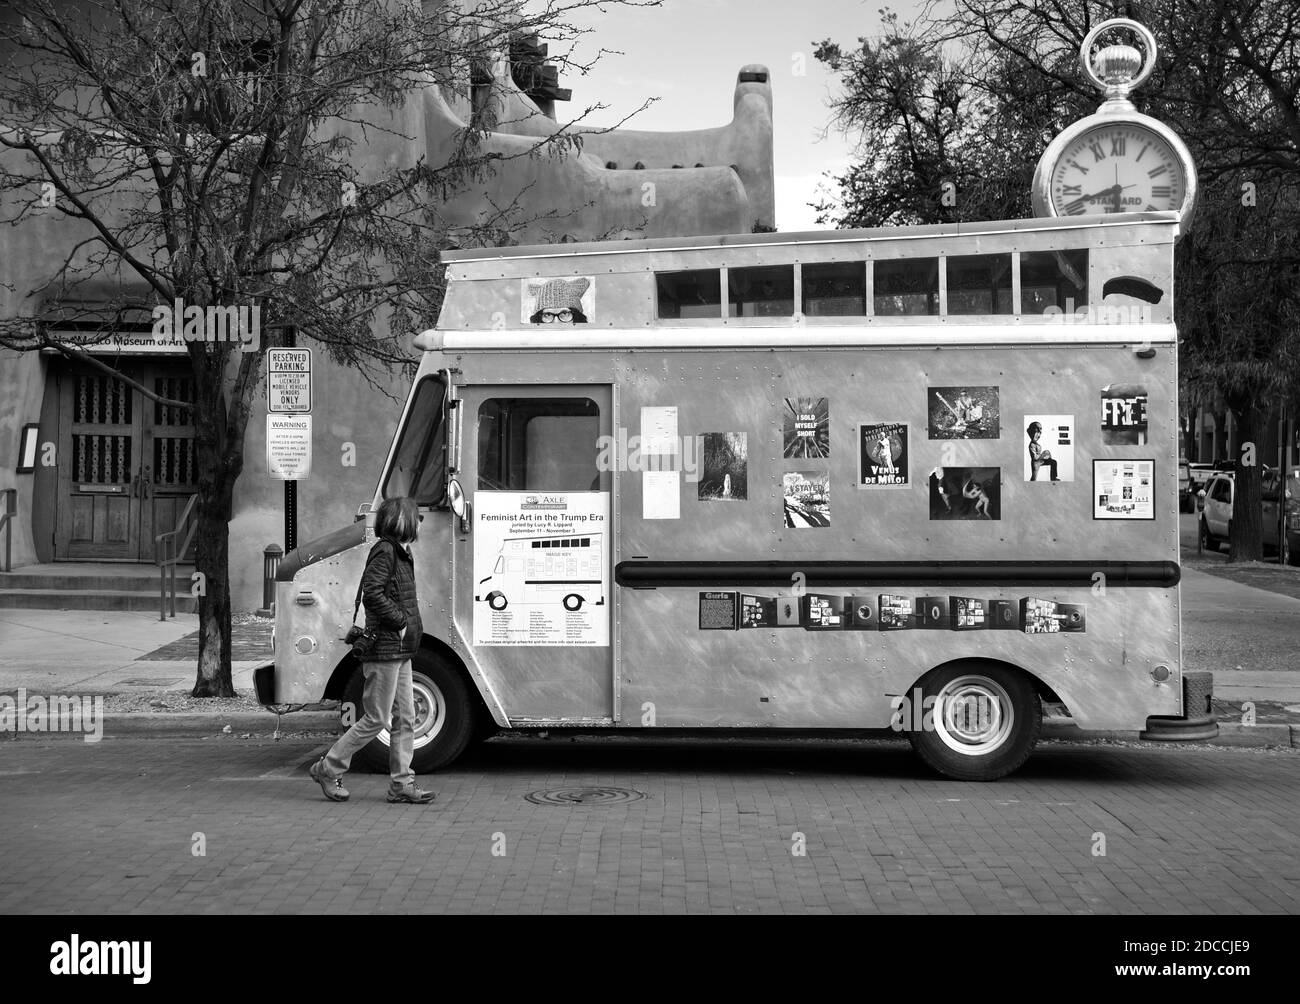 Axle Contemporary, eine mobile Kunstgalerie mit einer Ausstellung feministischer Kunst, kuratiert von der Kunstkritikerin und Schriftstellerin Lucy Lippard, in Santa Fe, New Mexico. Stockfoto